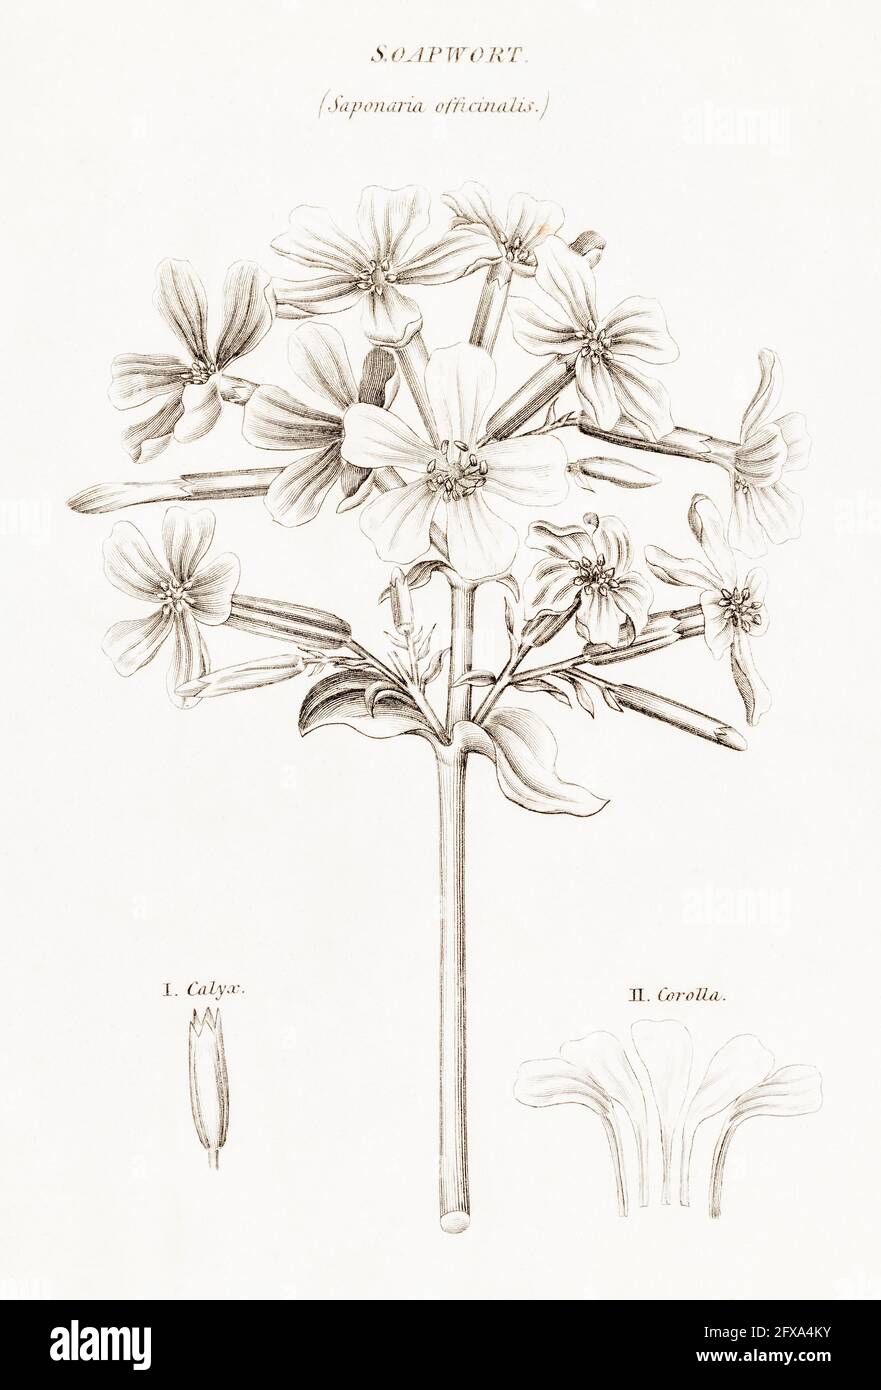 Illustration botanique en copperplate de Soapwort / Saponaria officinalis de la flore britannique de Robert Thornton, 1812. Utilisé pour le savon et la médecine. Banque D'Images